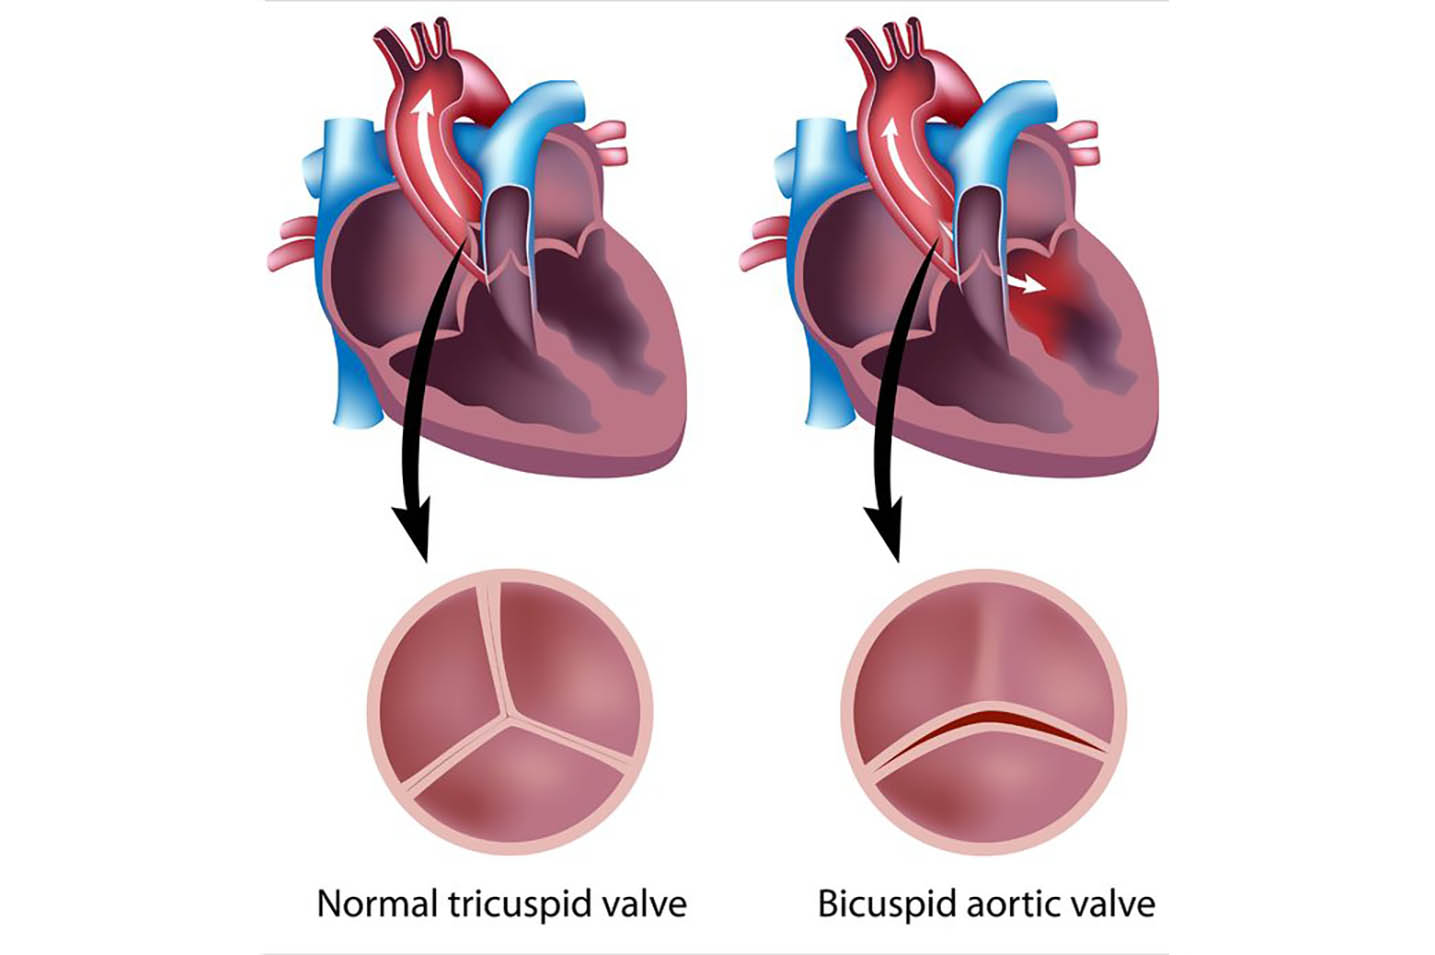 Diagram of normal tricuspid valve vs. bicuspid aortic valve